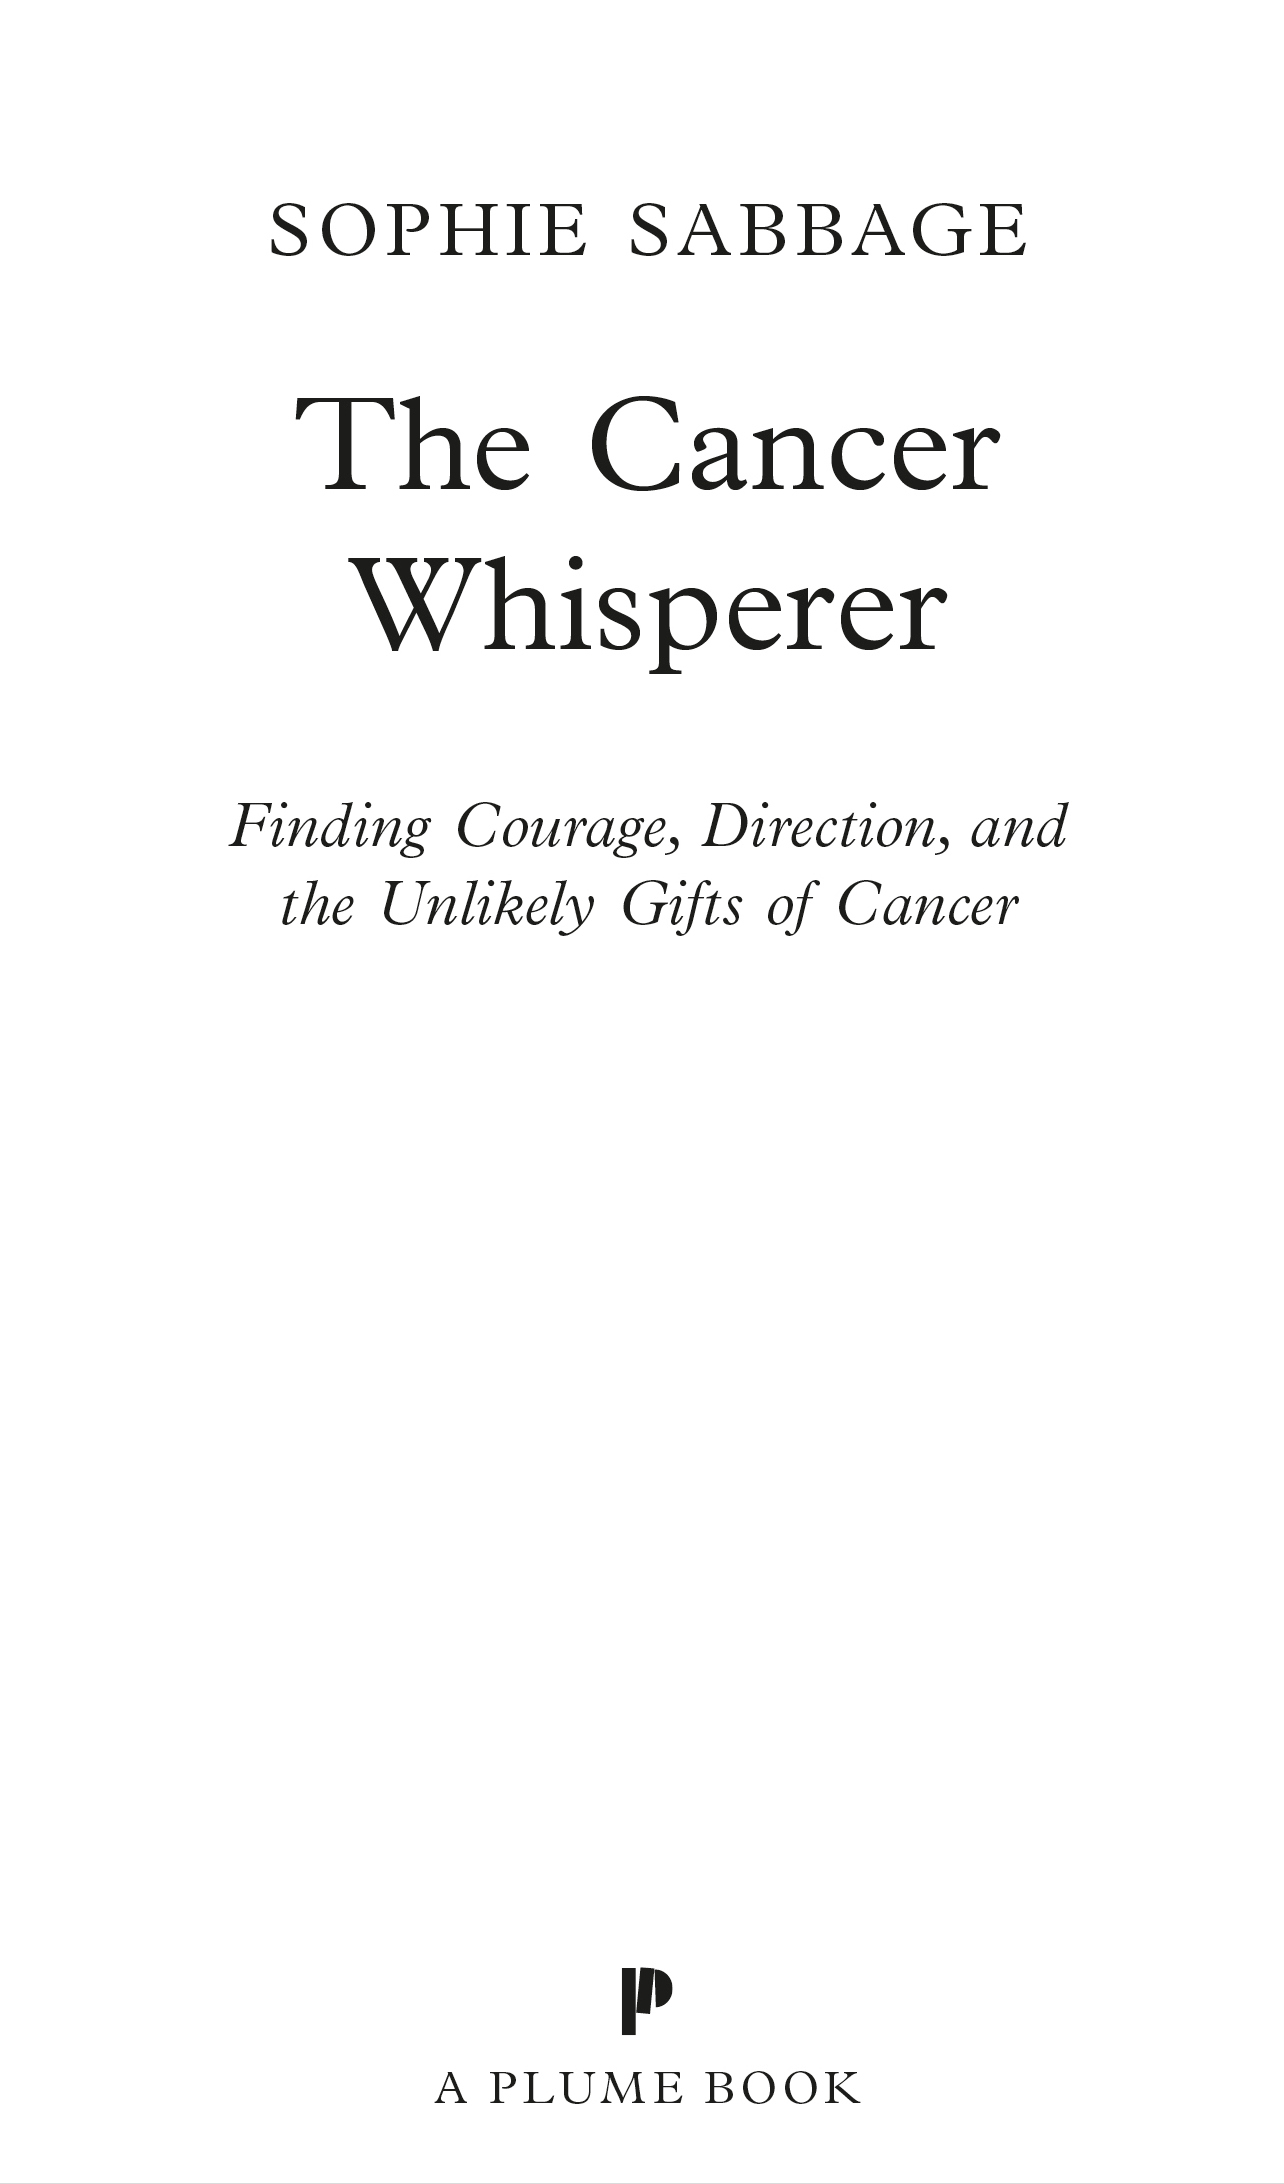 The Cancer Whisperer - image 3